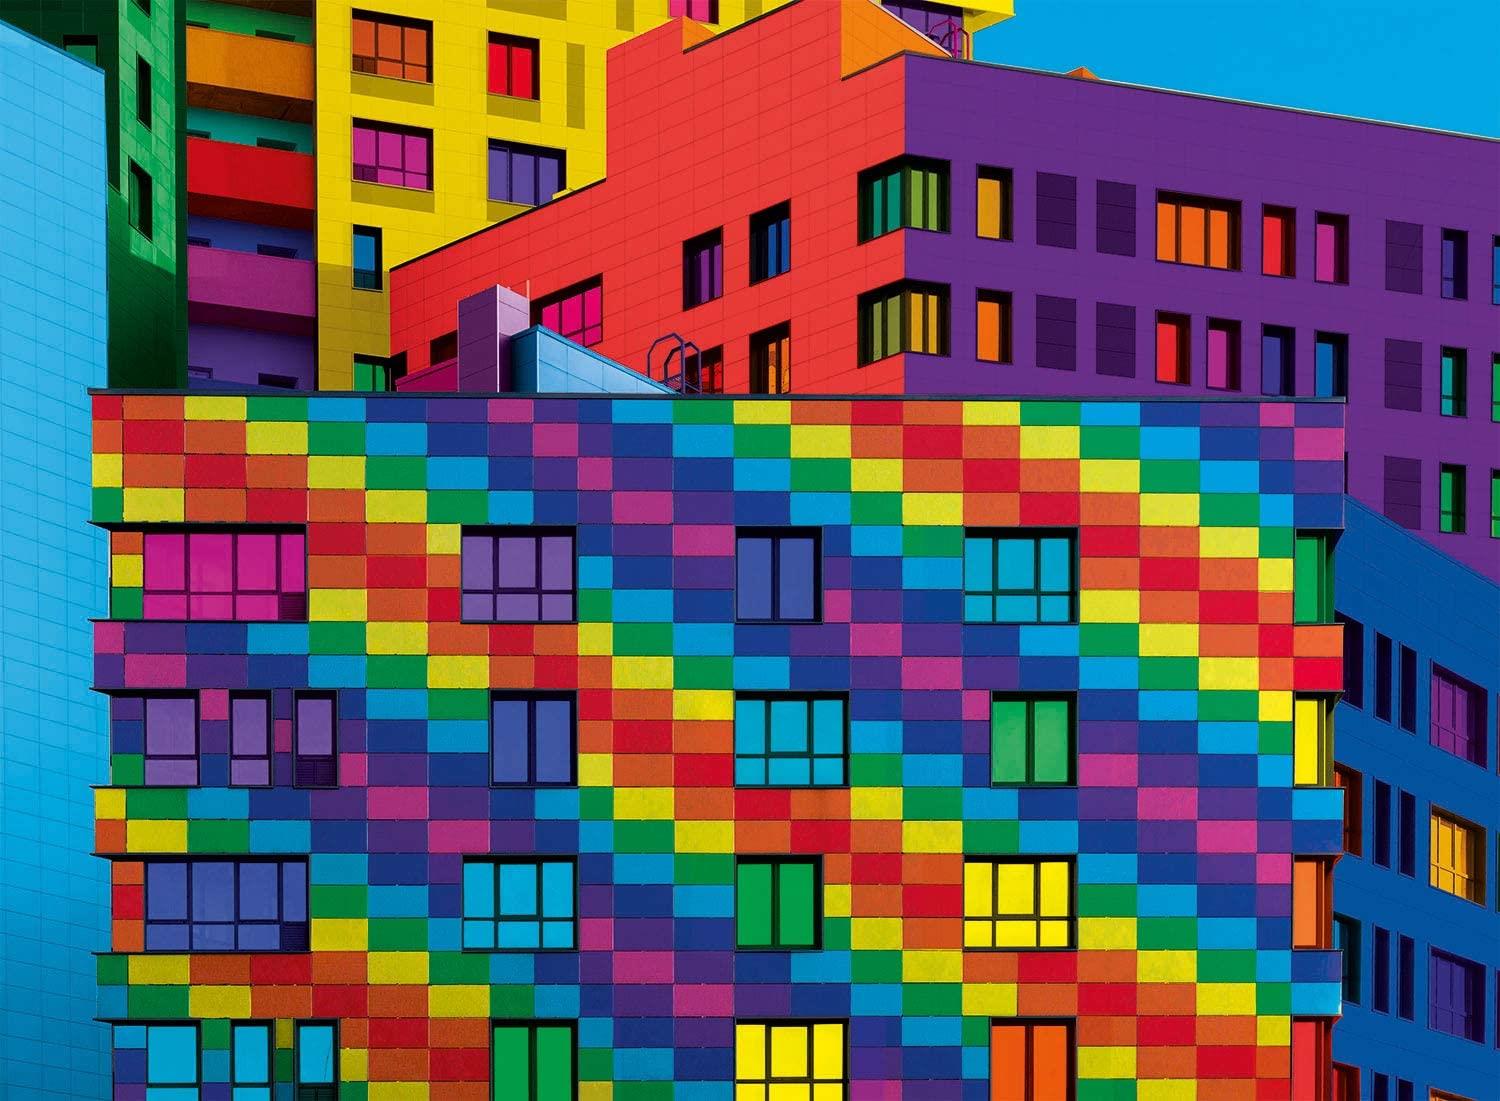 Clementoni Colour Boom Squares Jigsaw Puzzle (500 Pieces)